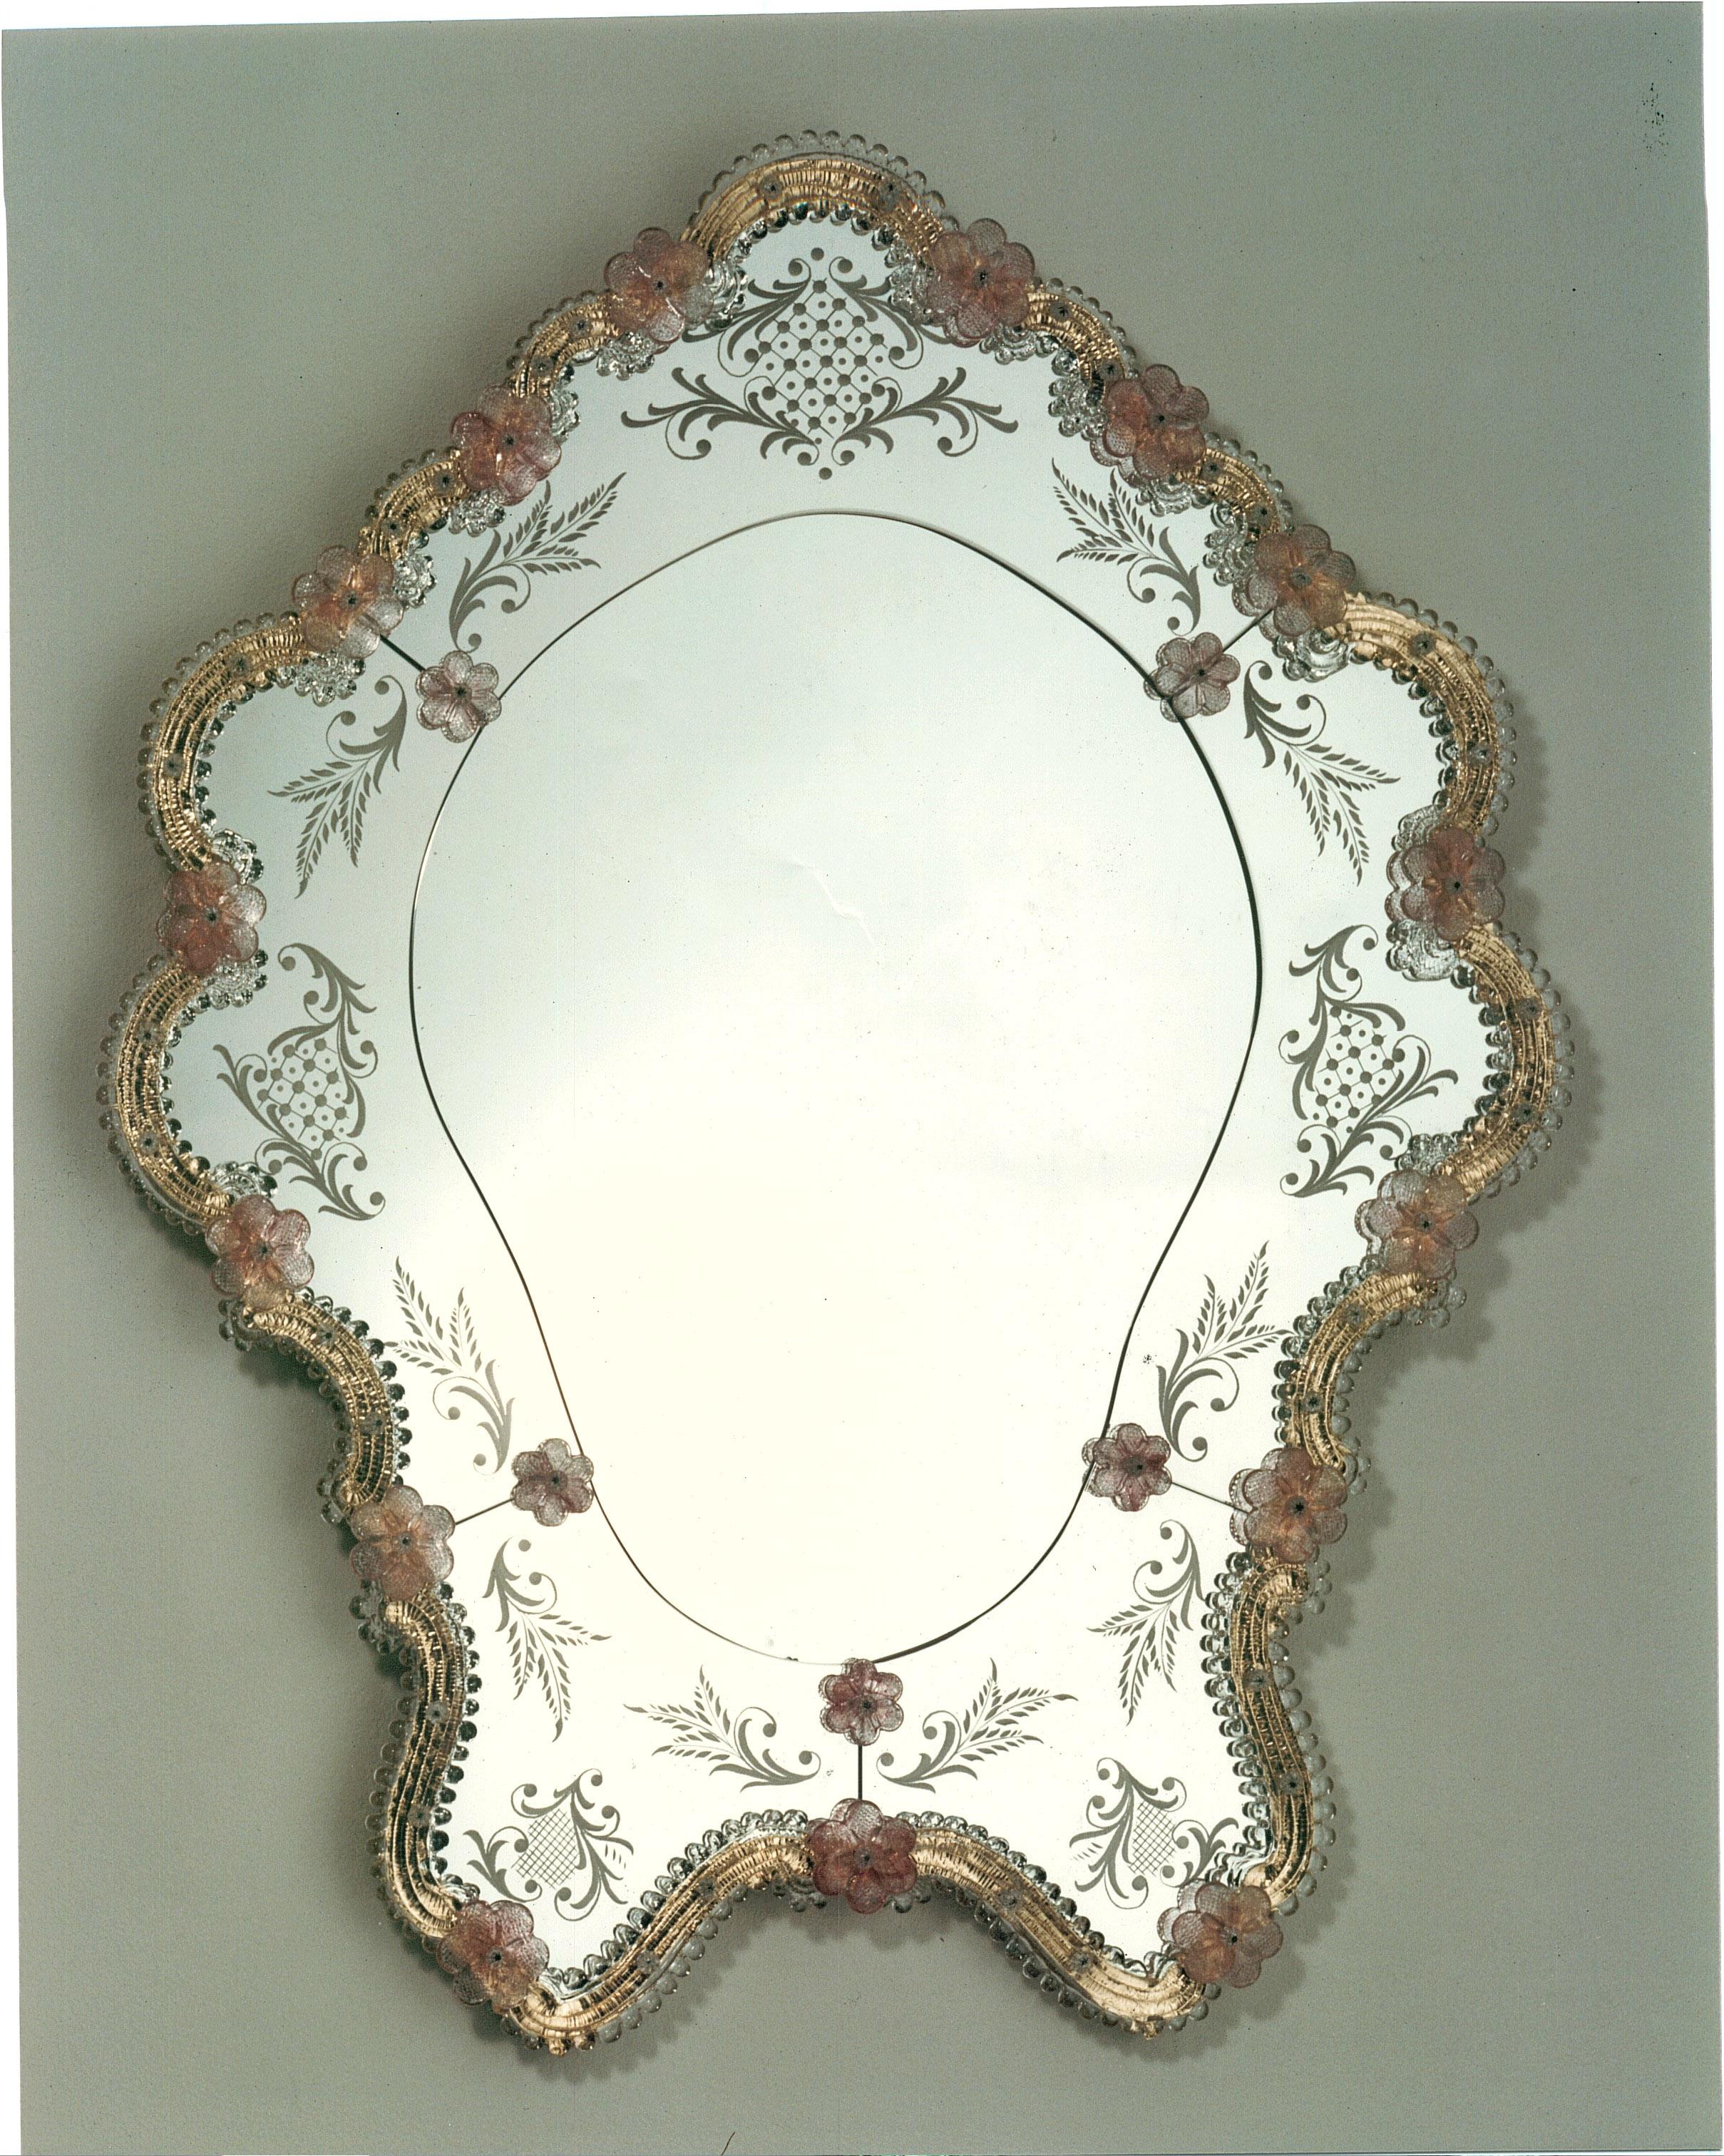 Miroir en verre de Murano de style vénitien, miroir réalisé à partir d'un design de Fratelli Tosi, entièrement fait à la main selon les techniques de nos ancêtres. Miroir composé d'un cadre en cristal et rubis en verre de Murano et décoré de boucles